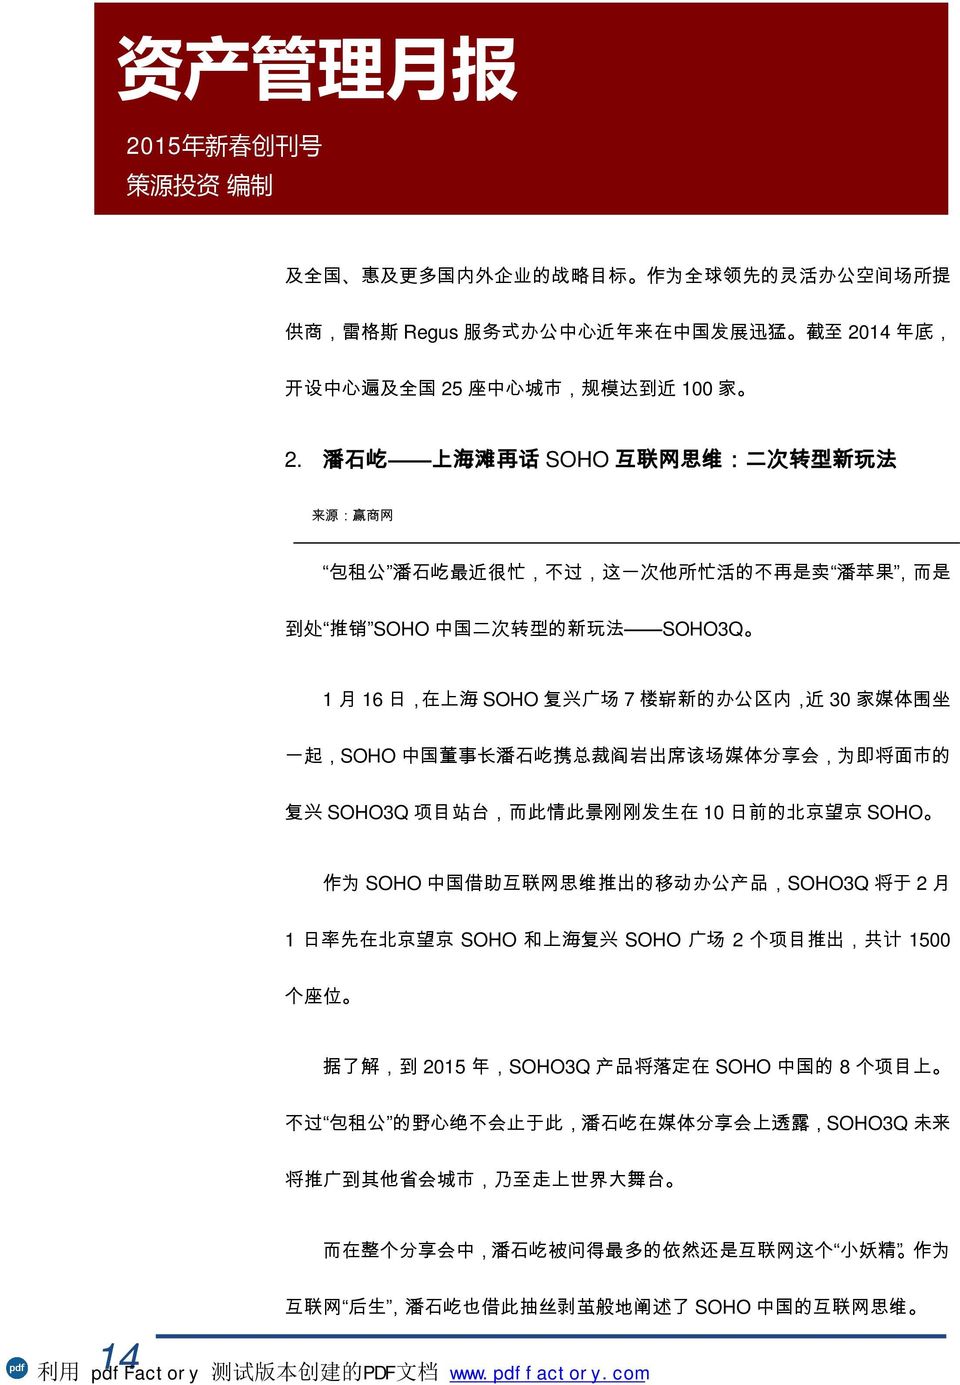 办 公 区 内, 近 30 家 媒 体 围 坐 一 起,SOHO 中 国 董 事 长 潘 石 屹 携 总 裁 阎 岩 出 席 该 场 媒 体 分 享 会, 为 即 将 面 市 的 复 兴 SOHO3Q 项 目 站 台, 而 此 情 此 景 刚 刚 发 生 在 10 日 前 的 北 京 望 京 SOHO 作 为 SOHO 中 国 借 助 互 联 网 思 维 推 出 的 移 动 办 公 产